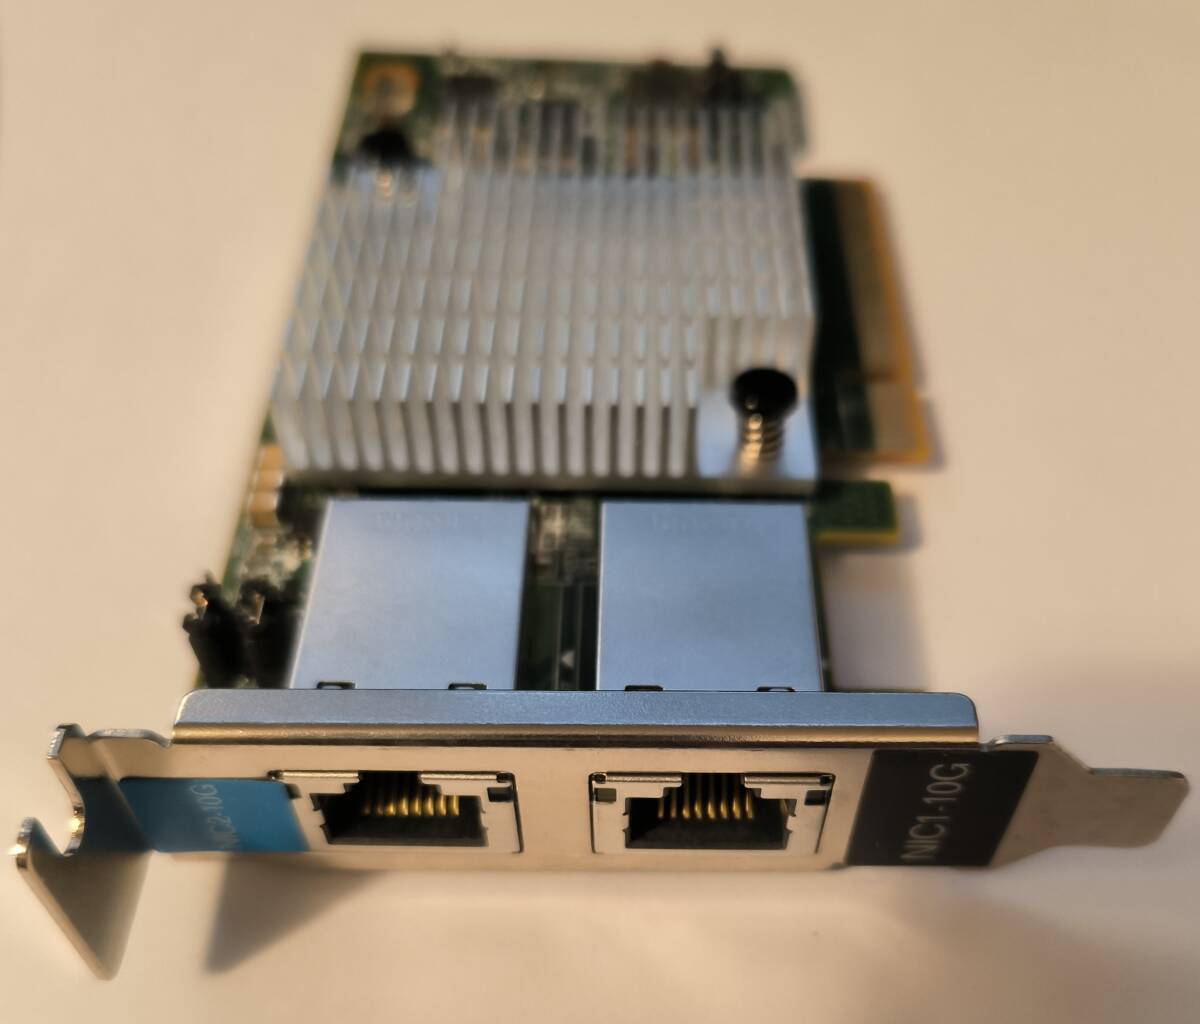 Inspur X540-AT2 10Gbps デュアルポート LANカード ( RJ45 * 2 / PCI-E x8 )の画像3